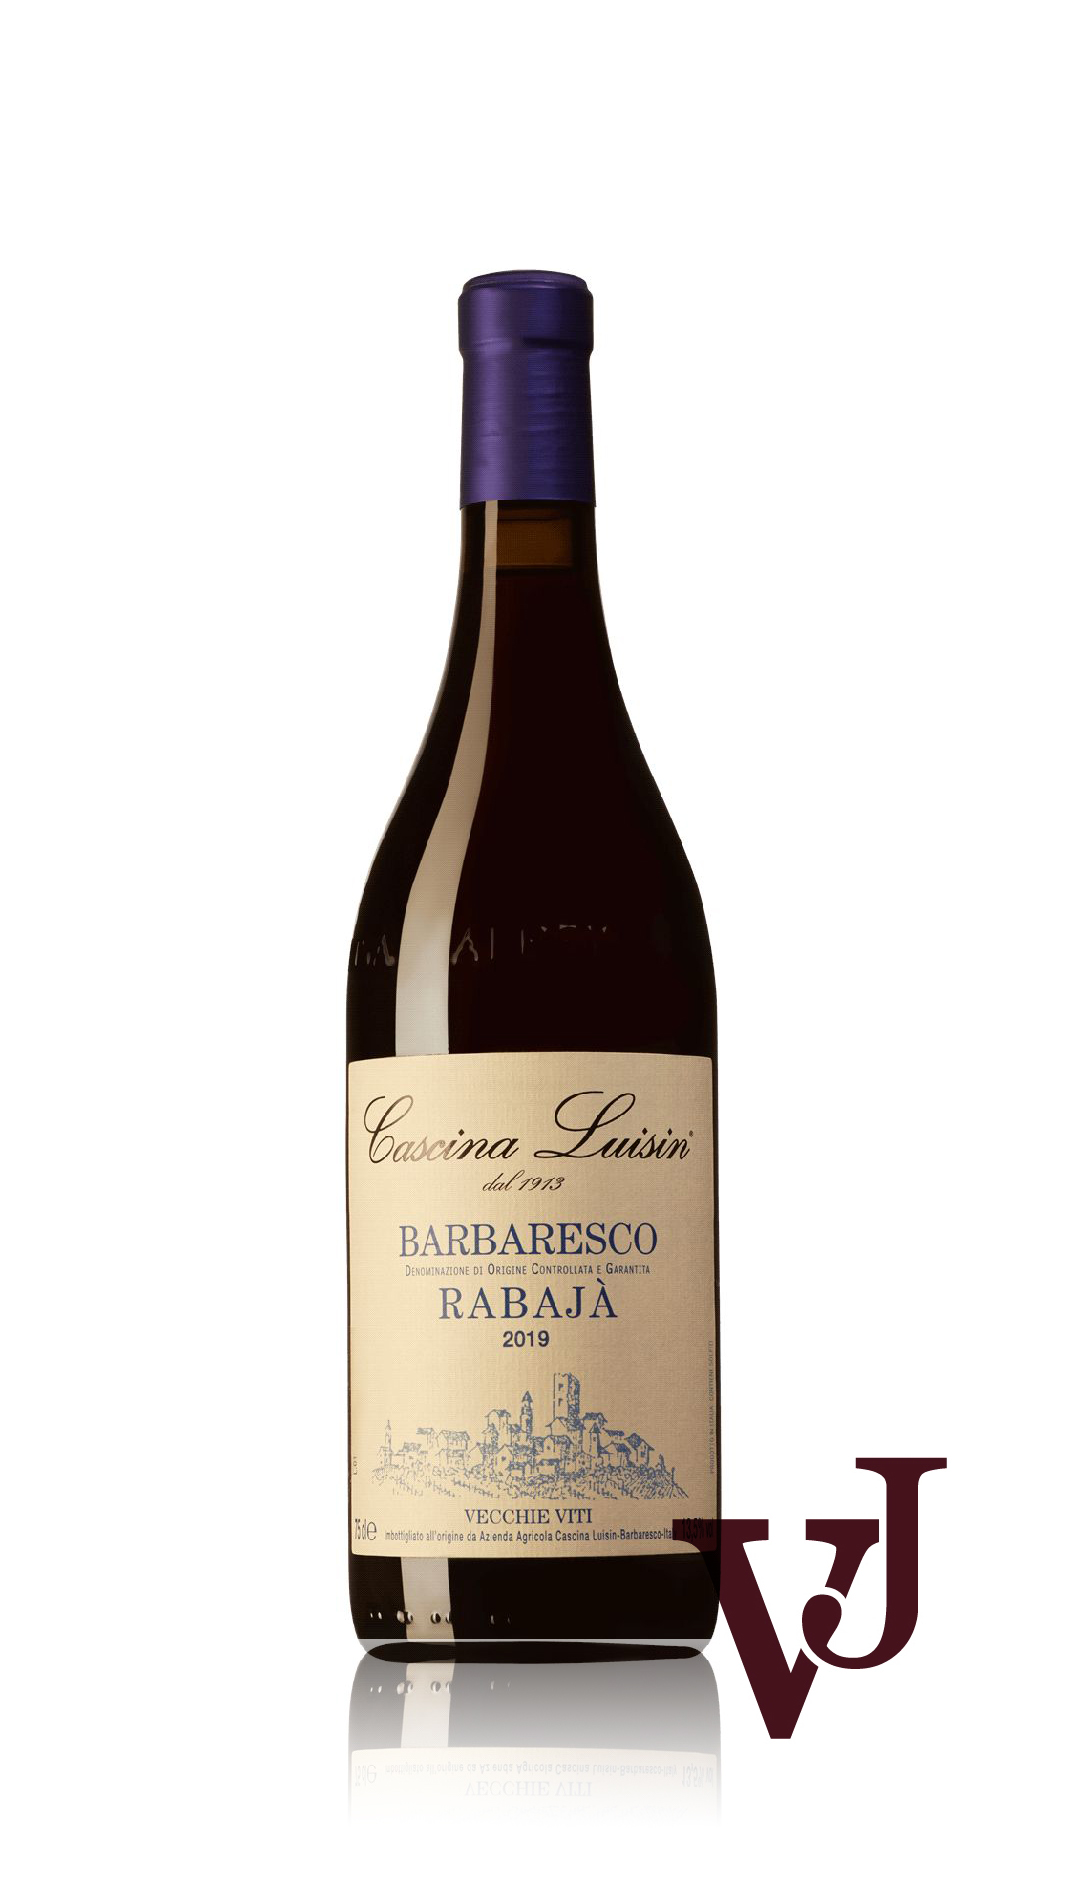 Vitt Vin - Barbaresco Rabajà Cascina Luisin 2019 artikel nummer 9477101 från producenten Cascina Luisin från området Italien